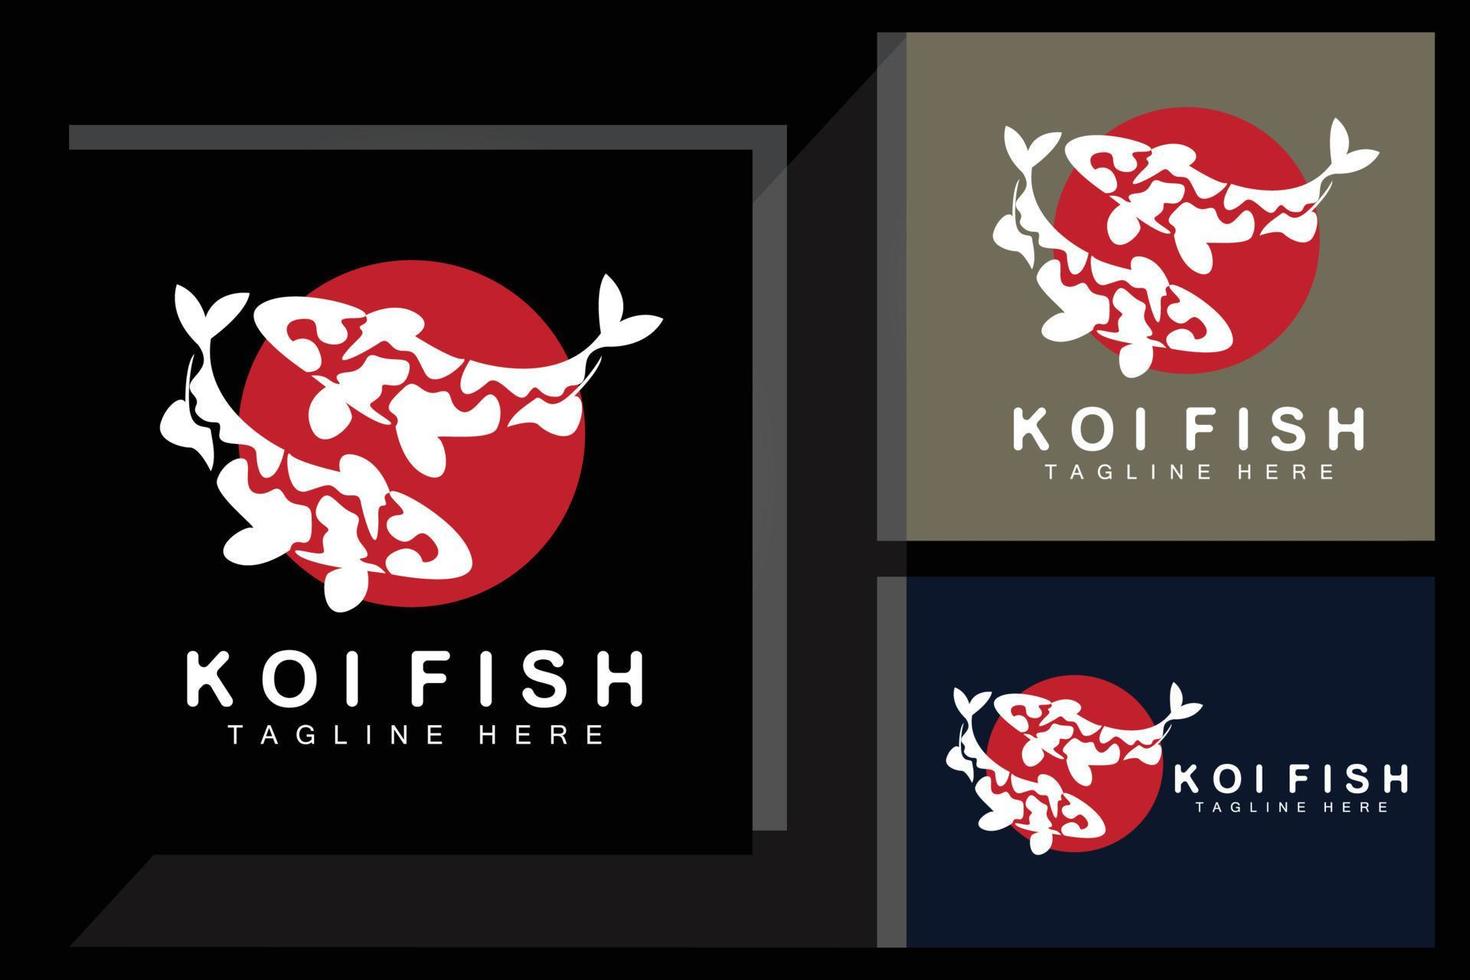 création de logo de poisson koi, vecteur de poisson d'ornement chanceux et triomphal chinois, icône de poisson d'or de marque d'entreprise